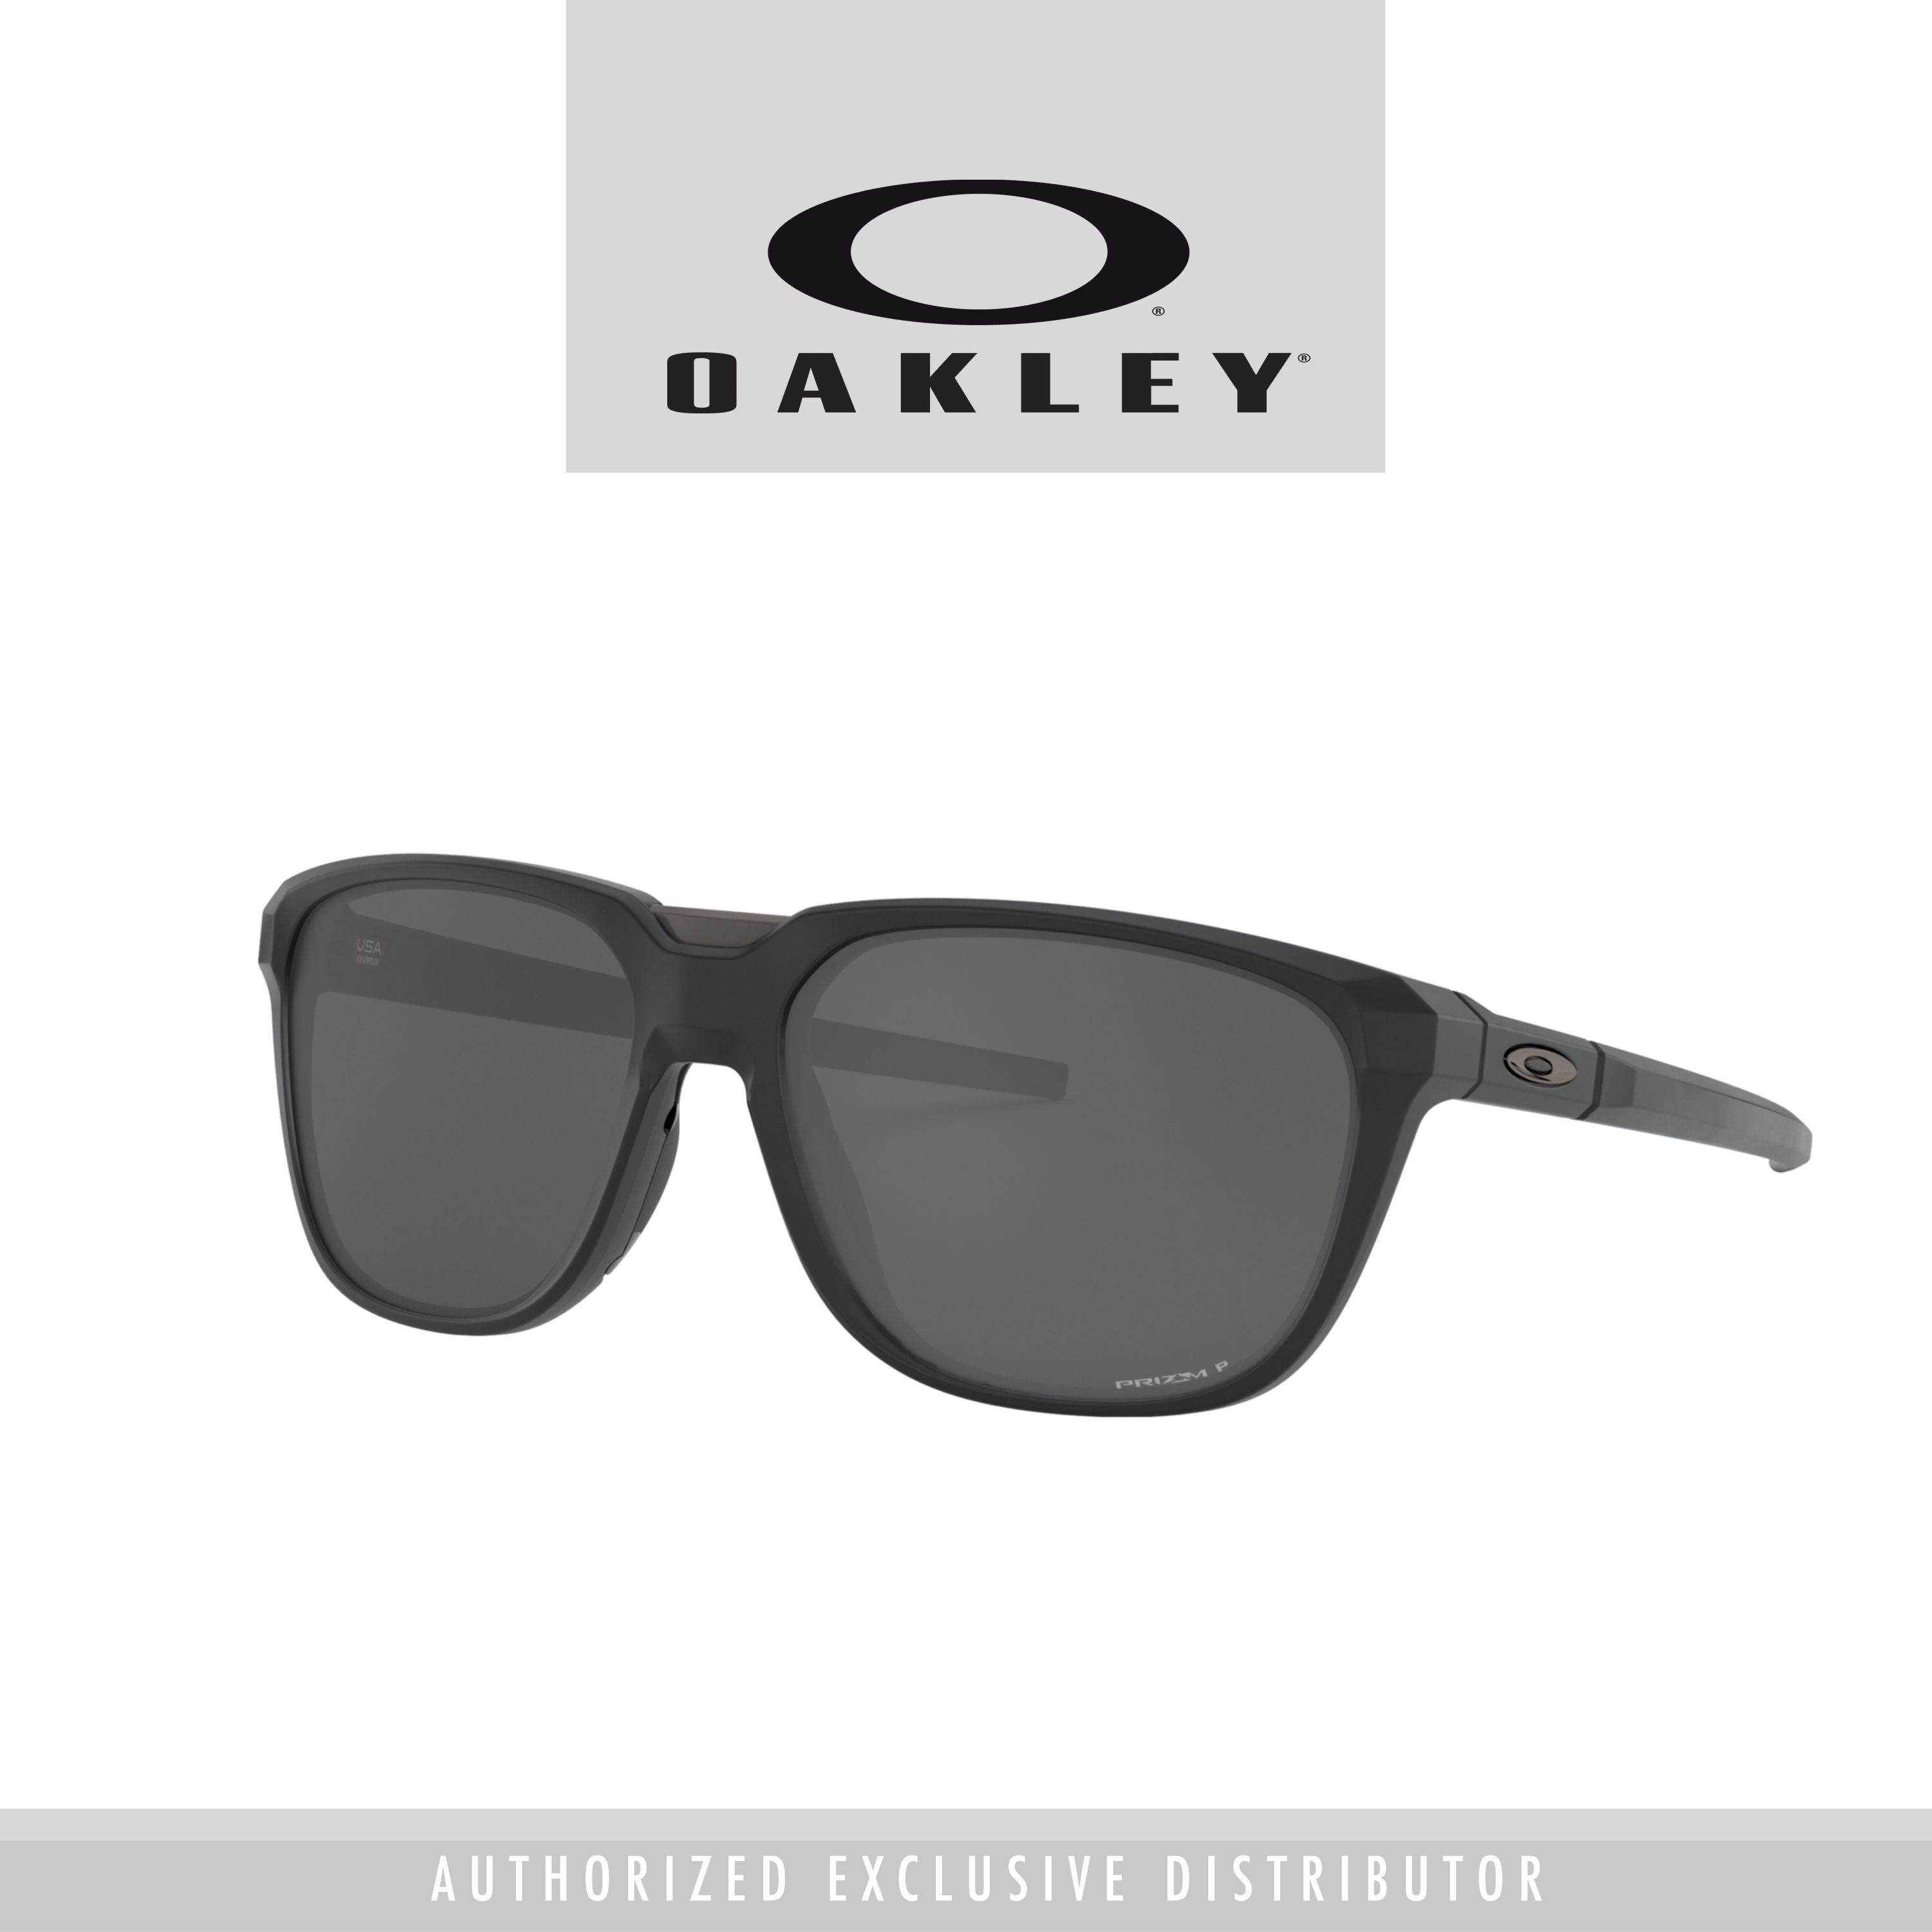 Buy Oakley Men Sunglasses Online 